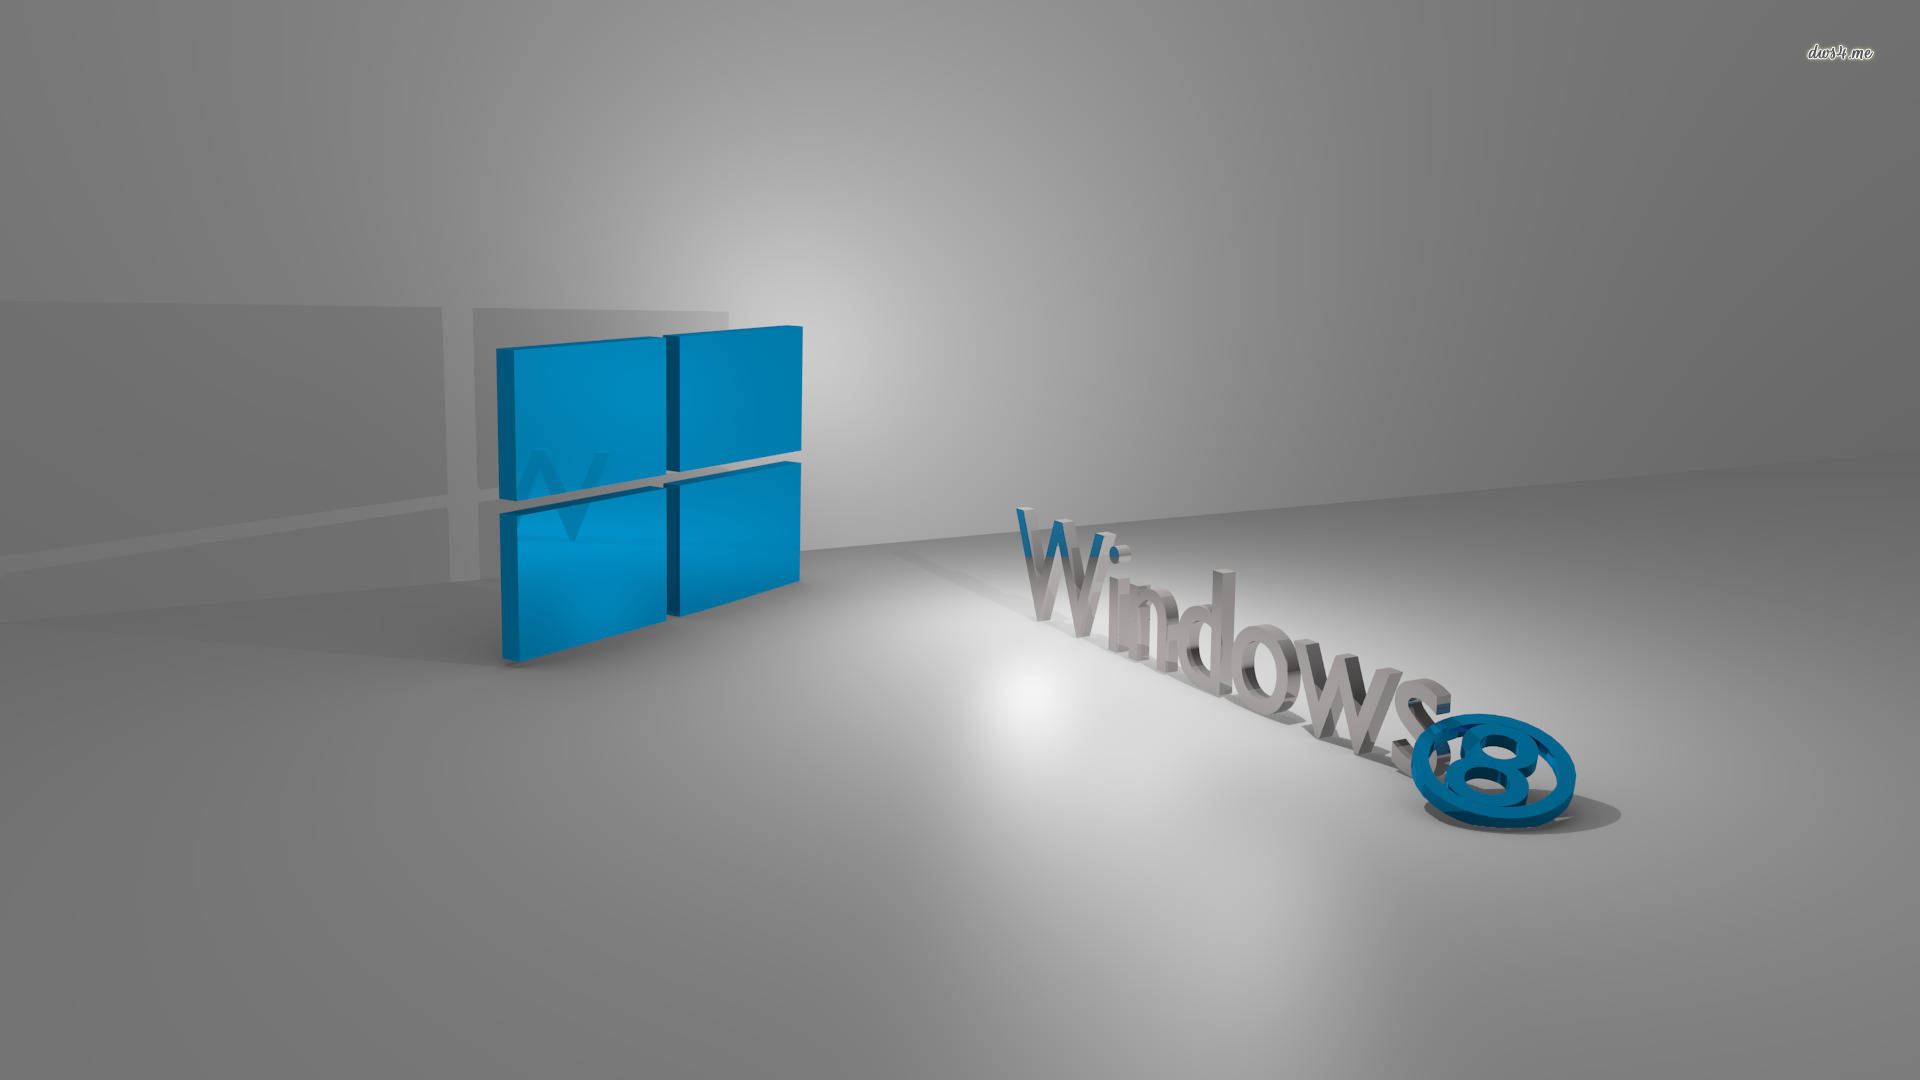 Logoy Palabra Distintiva De Windows 8 En 3d. Fondo de pantalla